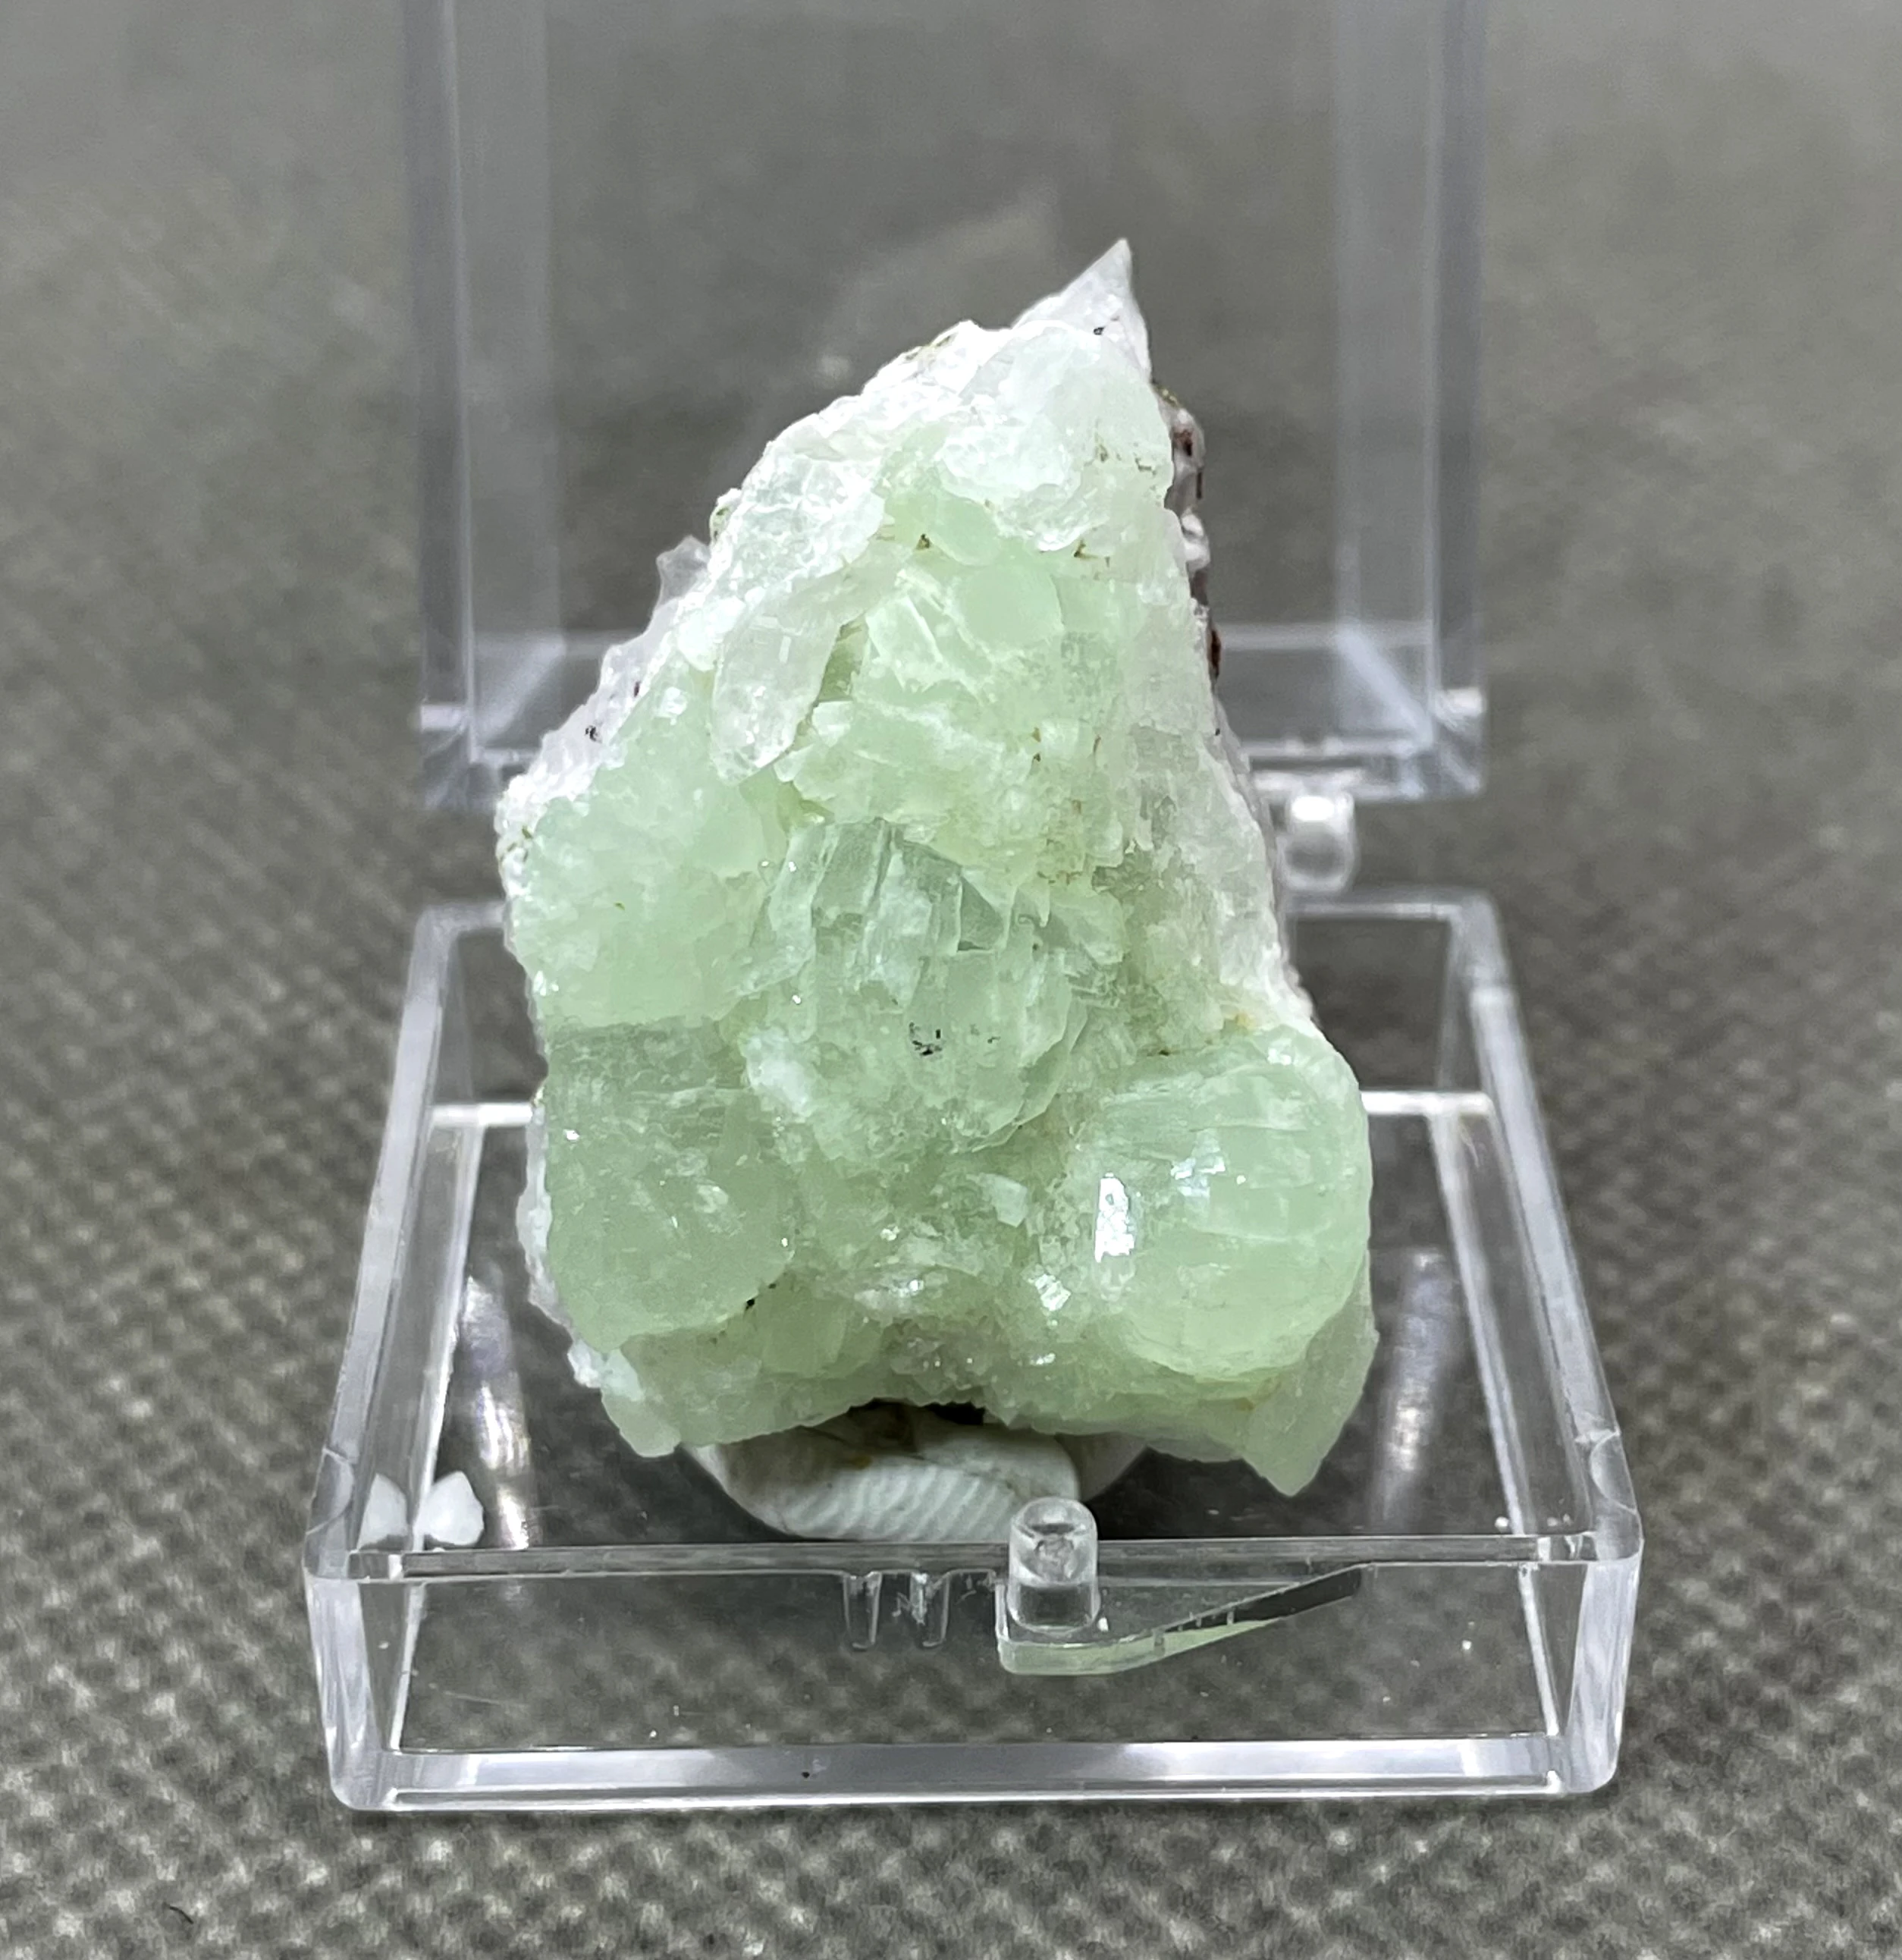 

NEW! 100% Natural rare Prehnite Mineral Specimens stones and crystals healing crystals quartz box size 3.4 cm